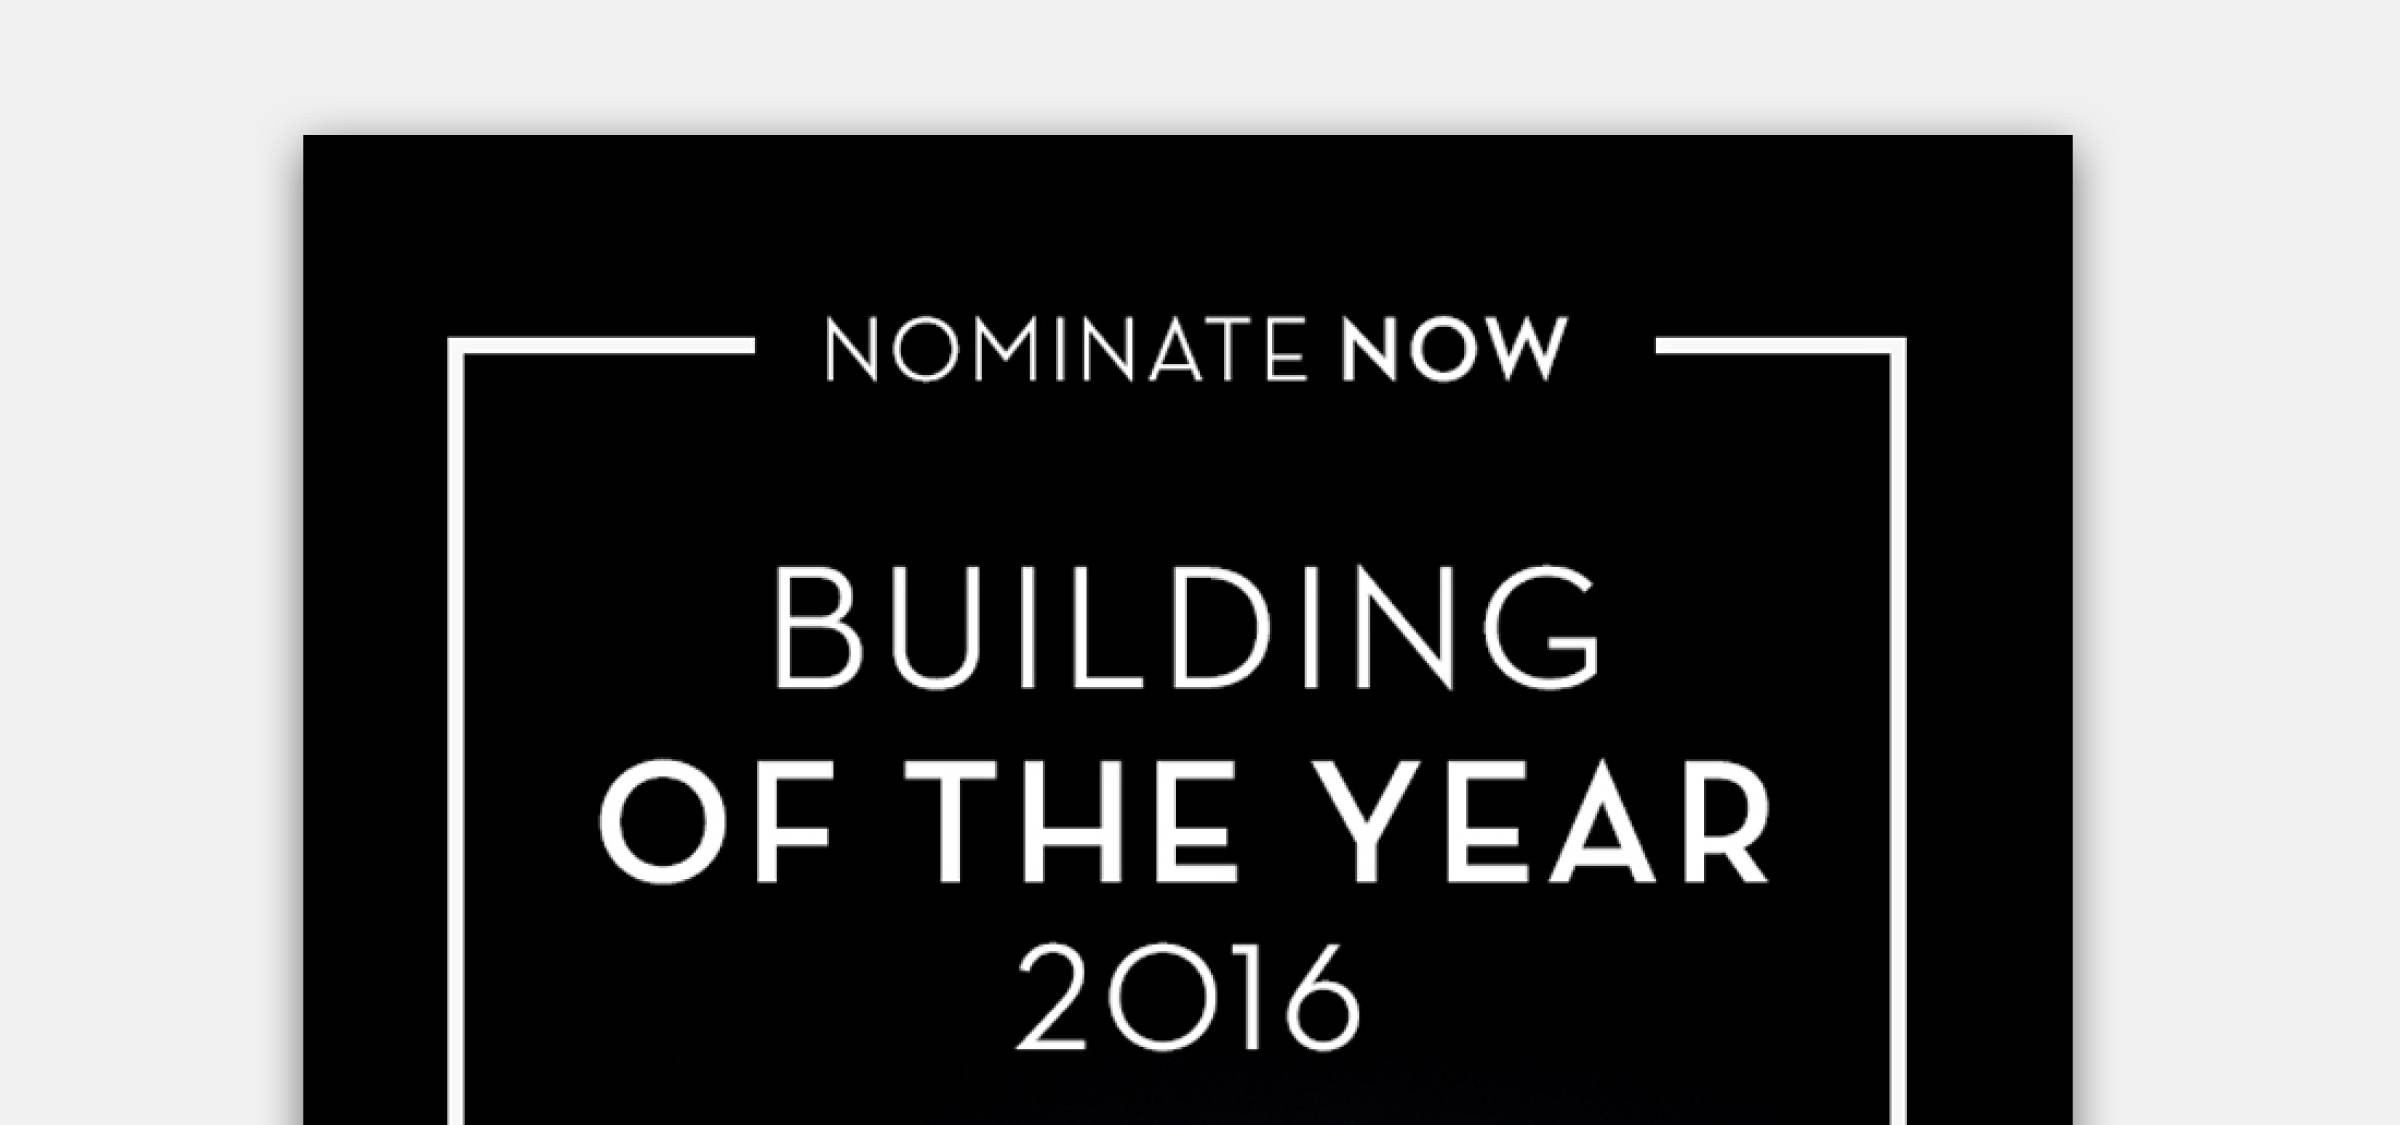 Získali sme Nomináciu na Building of the Year 2016 | Aktuálne | Atrium Architekti